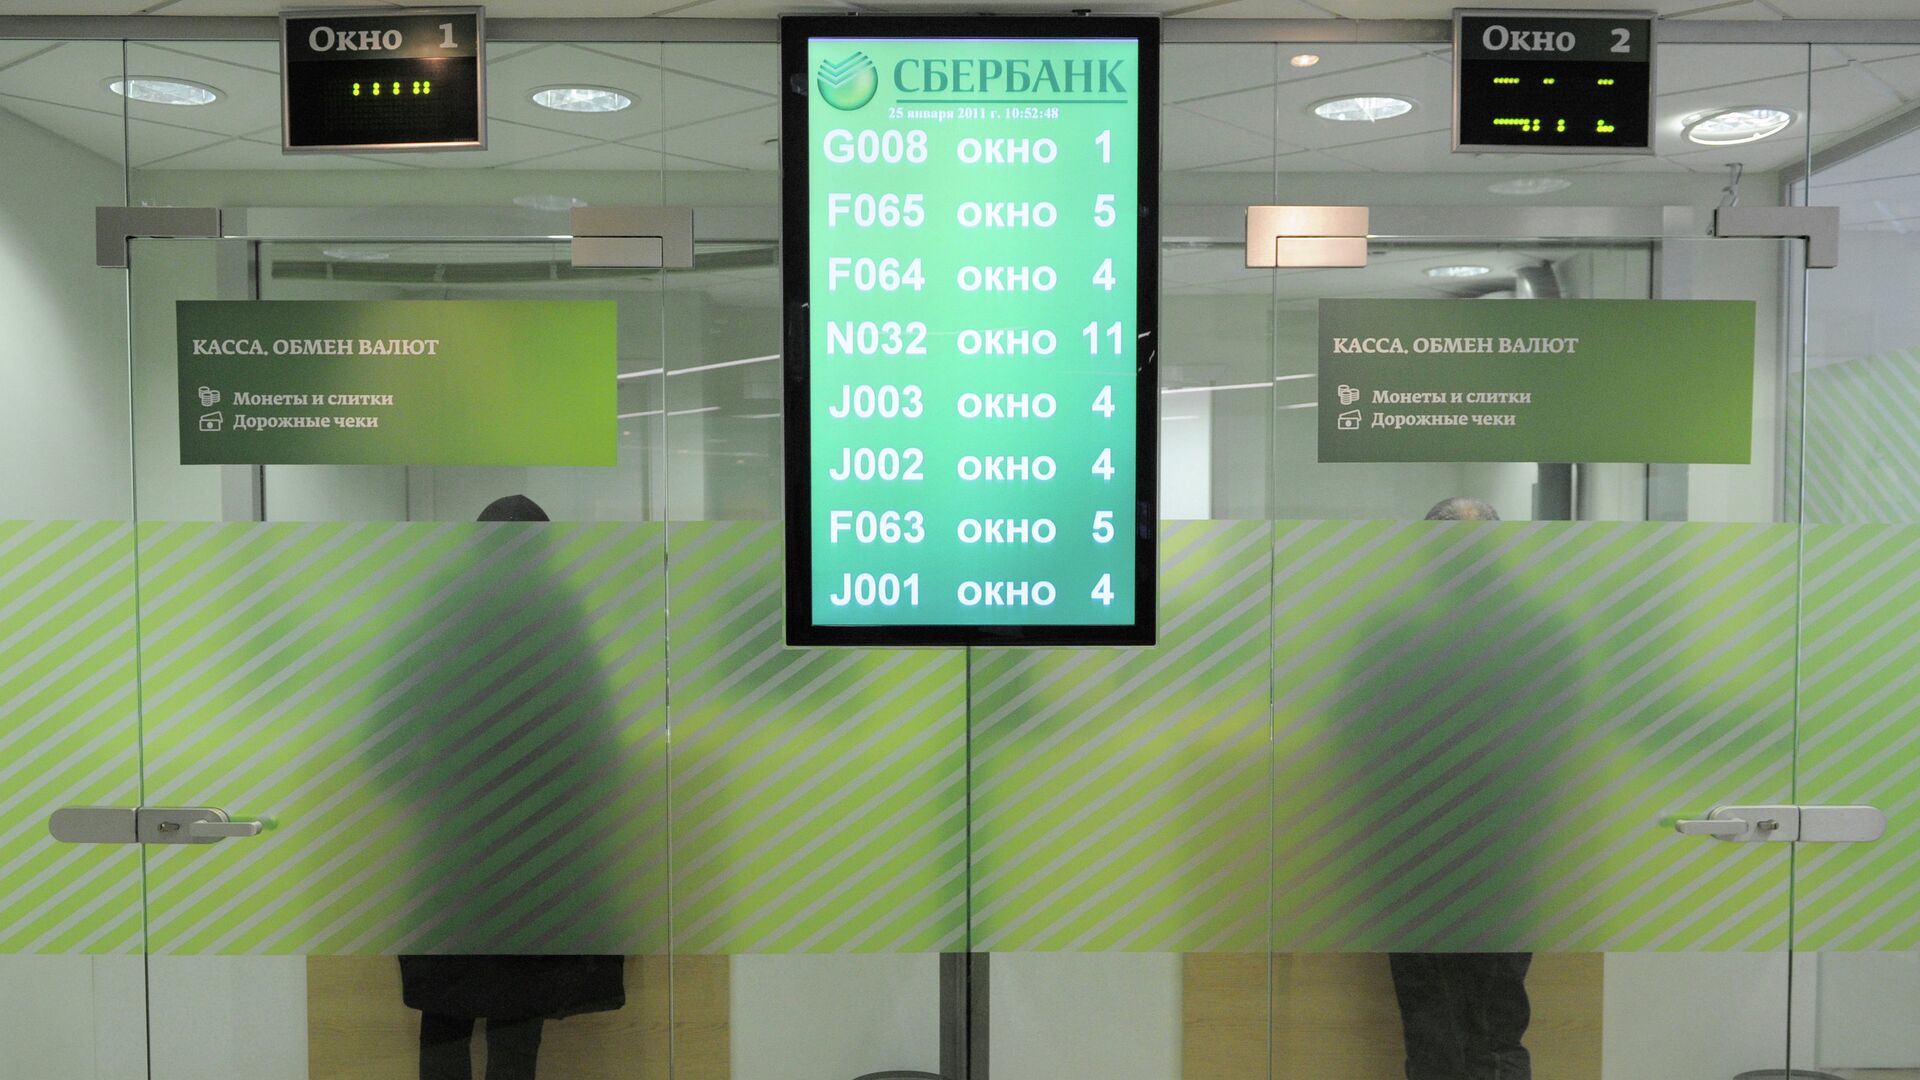 Сбербанк обмен валют в москве криптобиржа москва сити